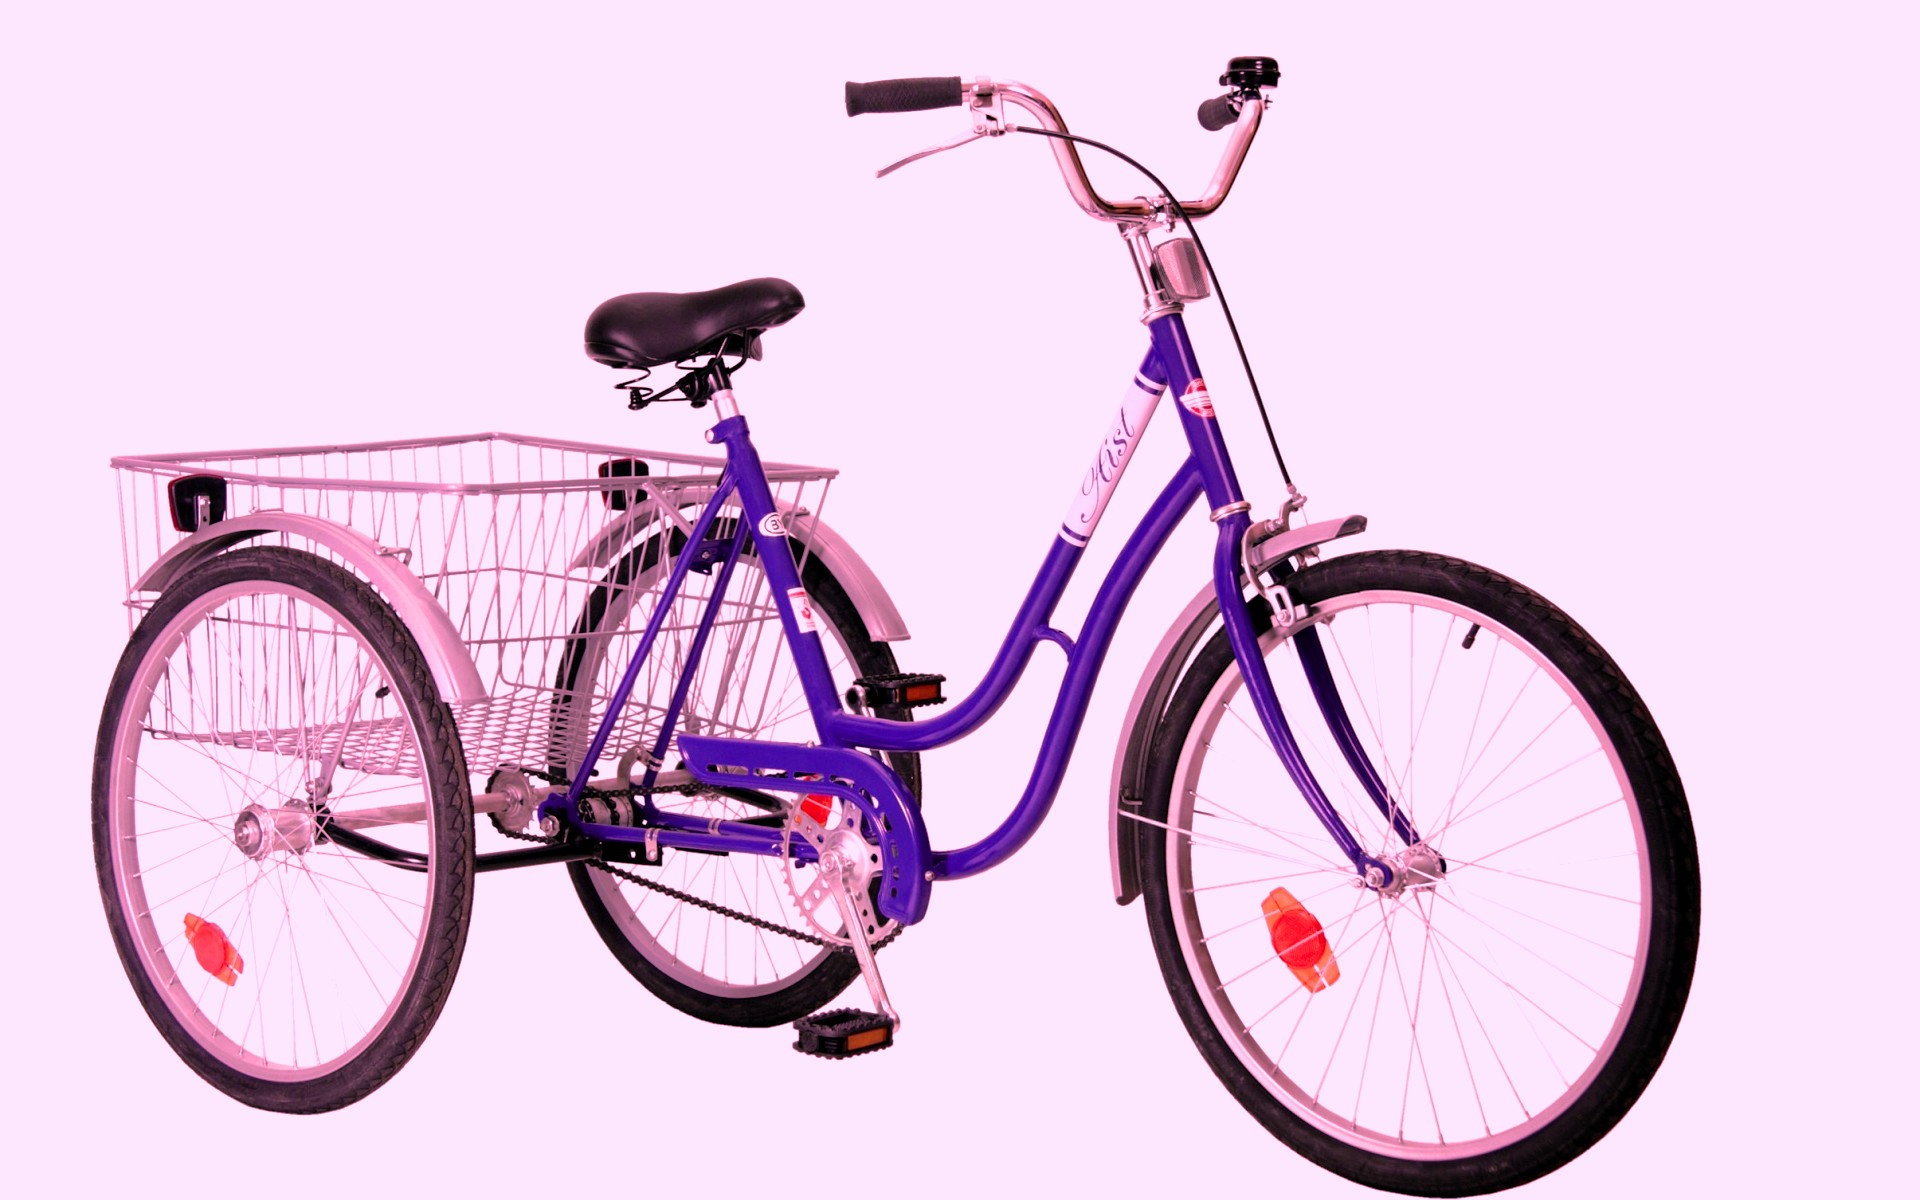 Авито москва велосипед взрослый. Велосипед Аист трехколесный взрослый. Трёхколёсный велосипед Aist Cargo 1.1. Велосипед Аист трехколесный для взрослых грузовой. Велосипед deumeko трехколесный.